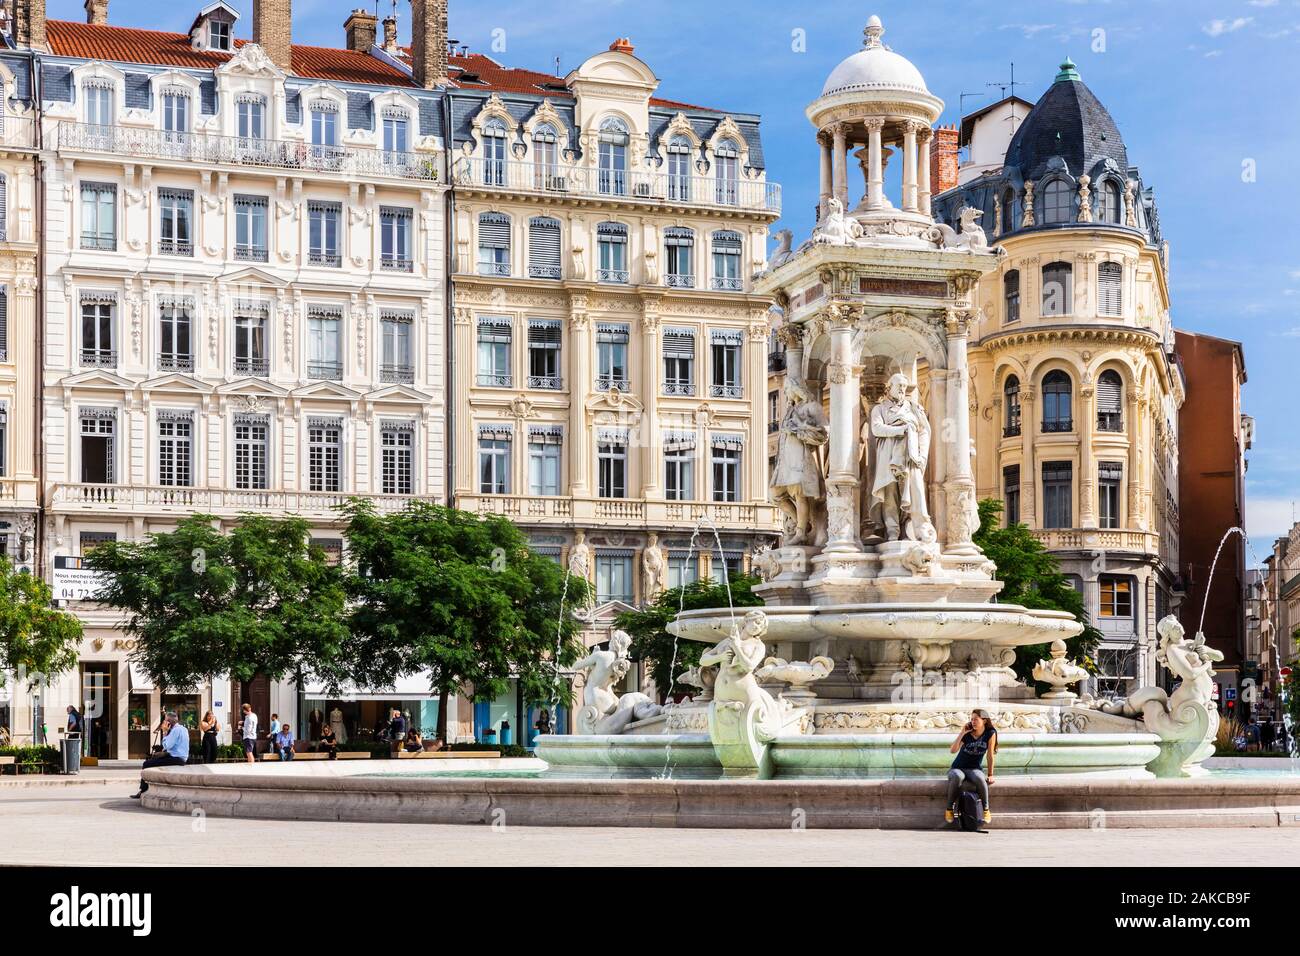 Francia, Ródano, Lyon, sitio histórico catalogado como Patrimonio Mundial por la UNESCO, Cordeliers district, la fuente de la Place des Jacobins Foto de stock